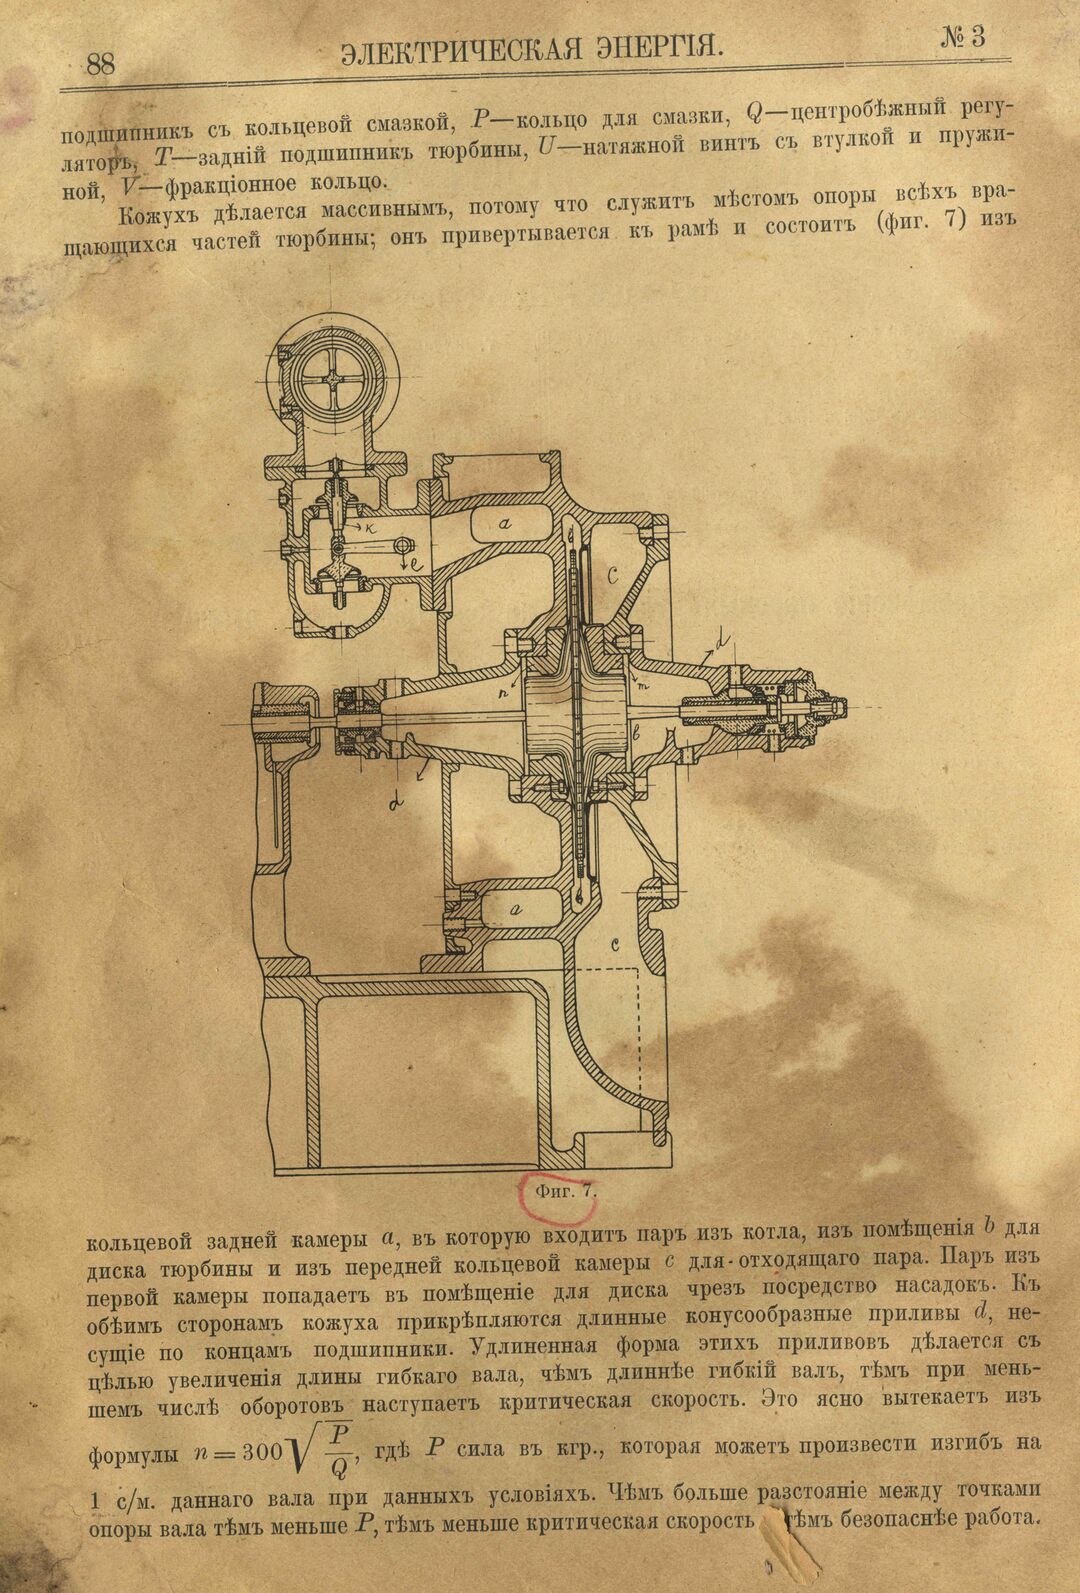 Рис. 1. Журнал Электрическая Энергiя, 3 номер, март, 1904 года, страница 88